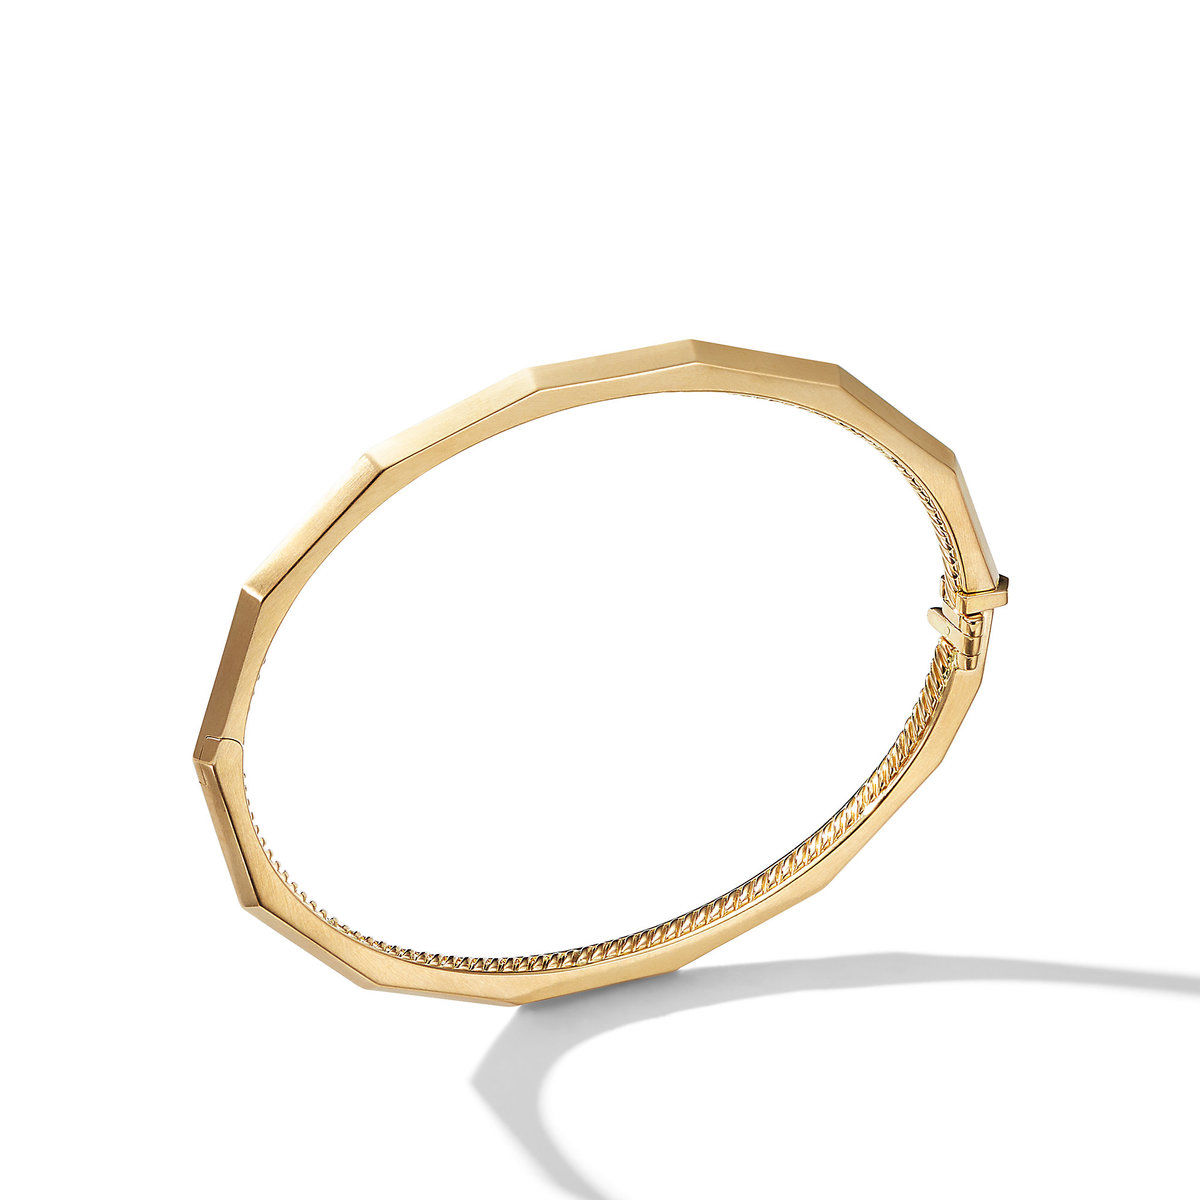 David Yurman Stax Single Row Faceted Bracelet in 18K Gold, 3mm